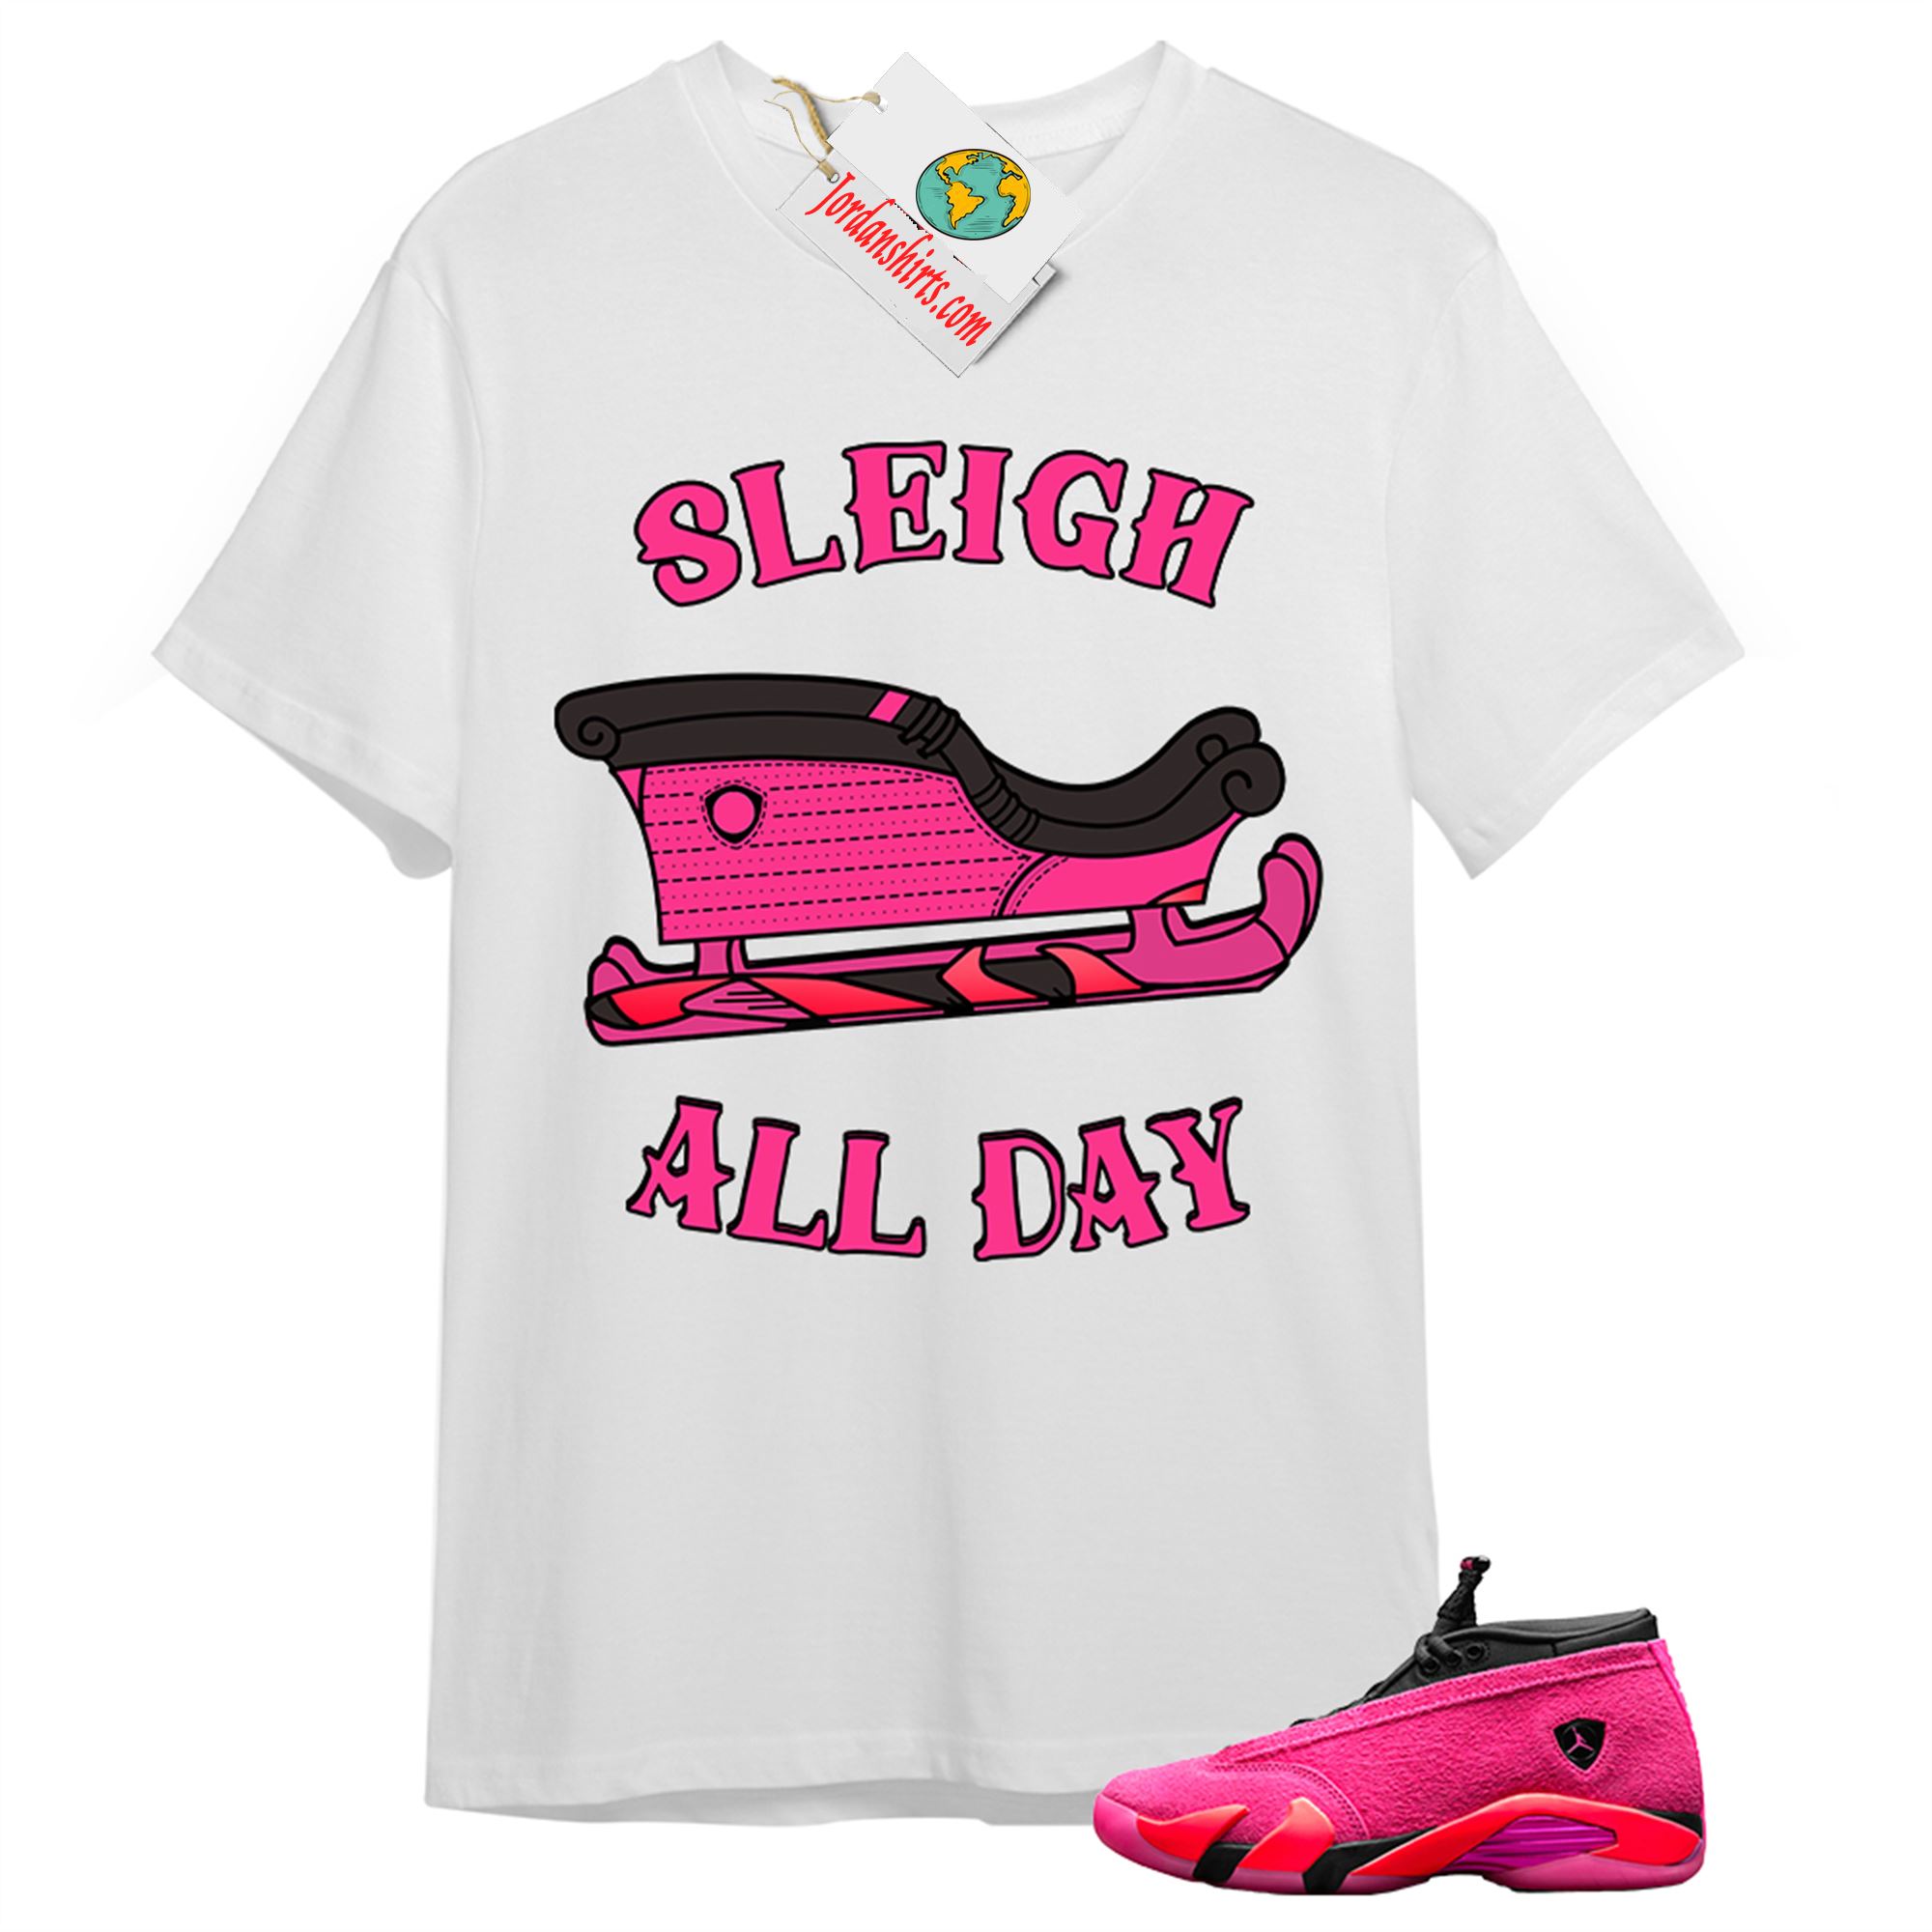 Jordan 14 Shirt, Sneaker Sleigh White T-shirt Air Jordan 14 Wmns Shocking Pink 14s Size Up To 5xl